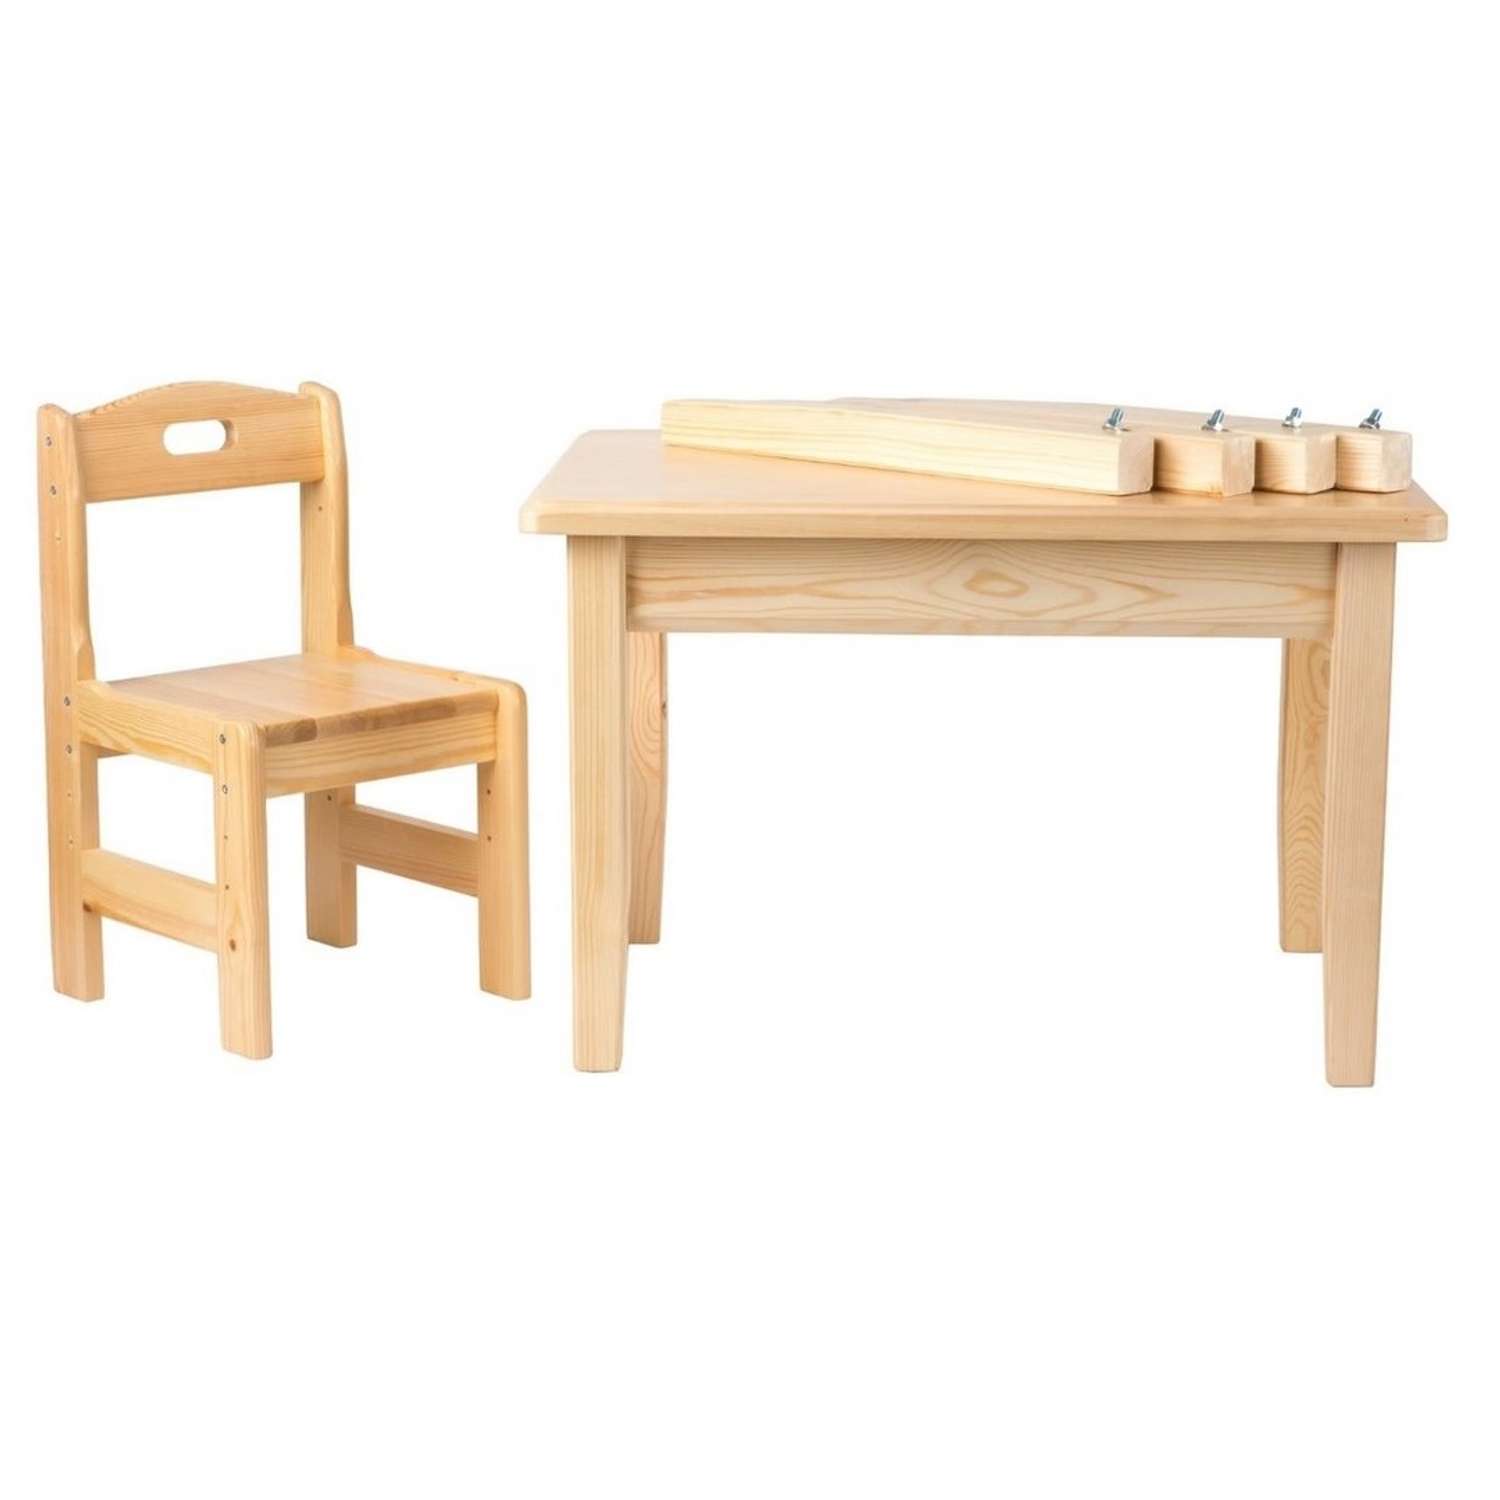 Набор Мебель для дошколят стол со стульчиком регулируемый для детей от 2 до 6 лет - фото 2